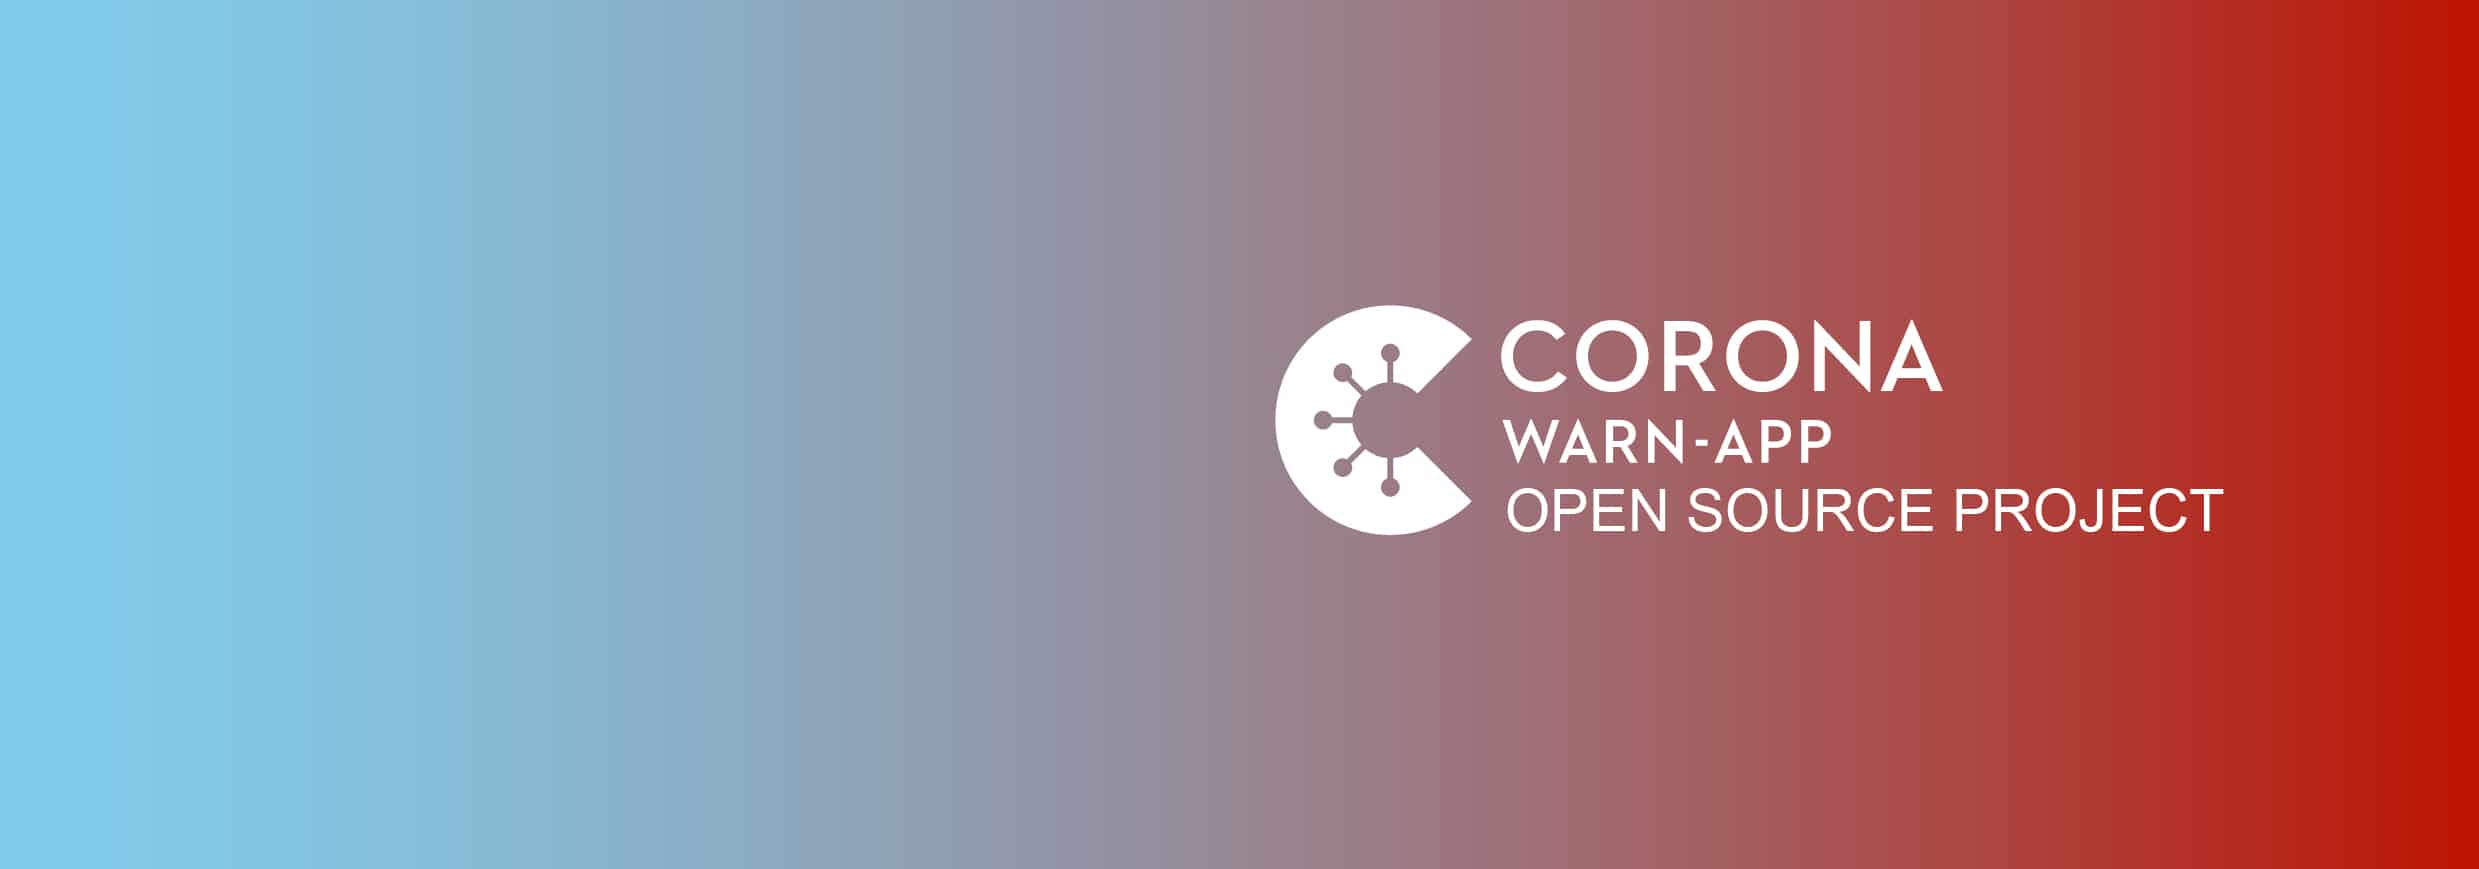 Corona-Warn-App – Wo stehen wir nach dem ersten Monat?